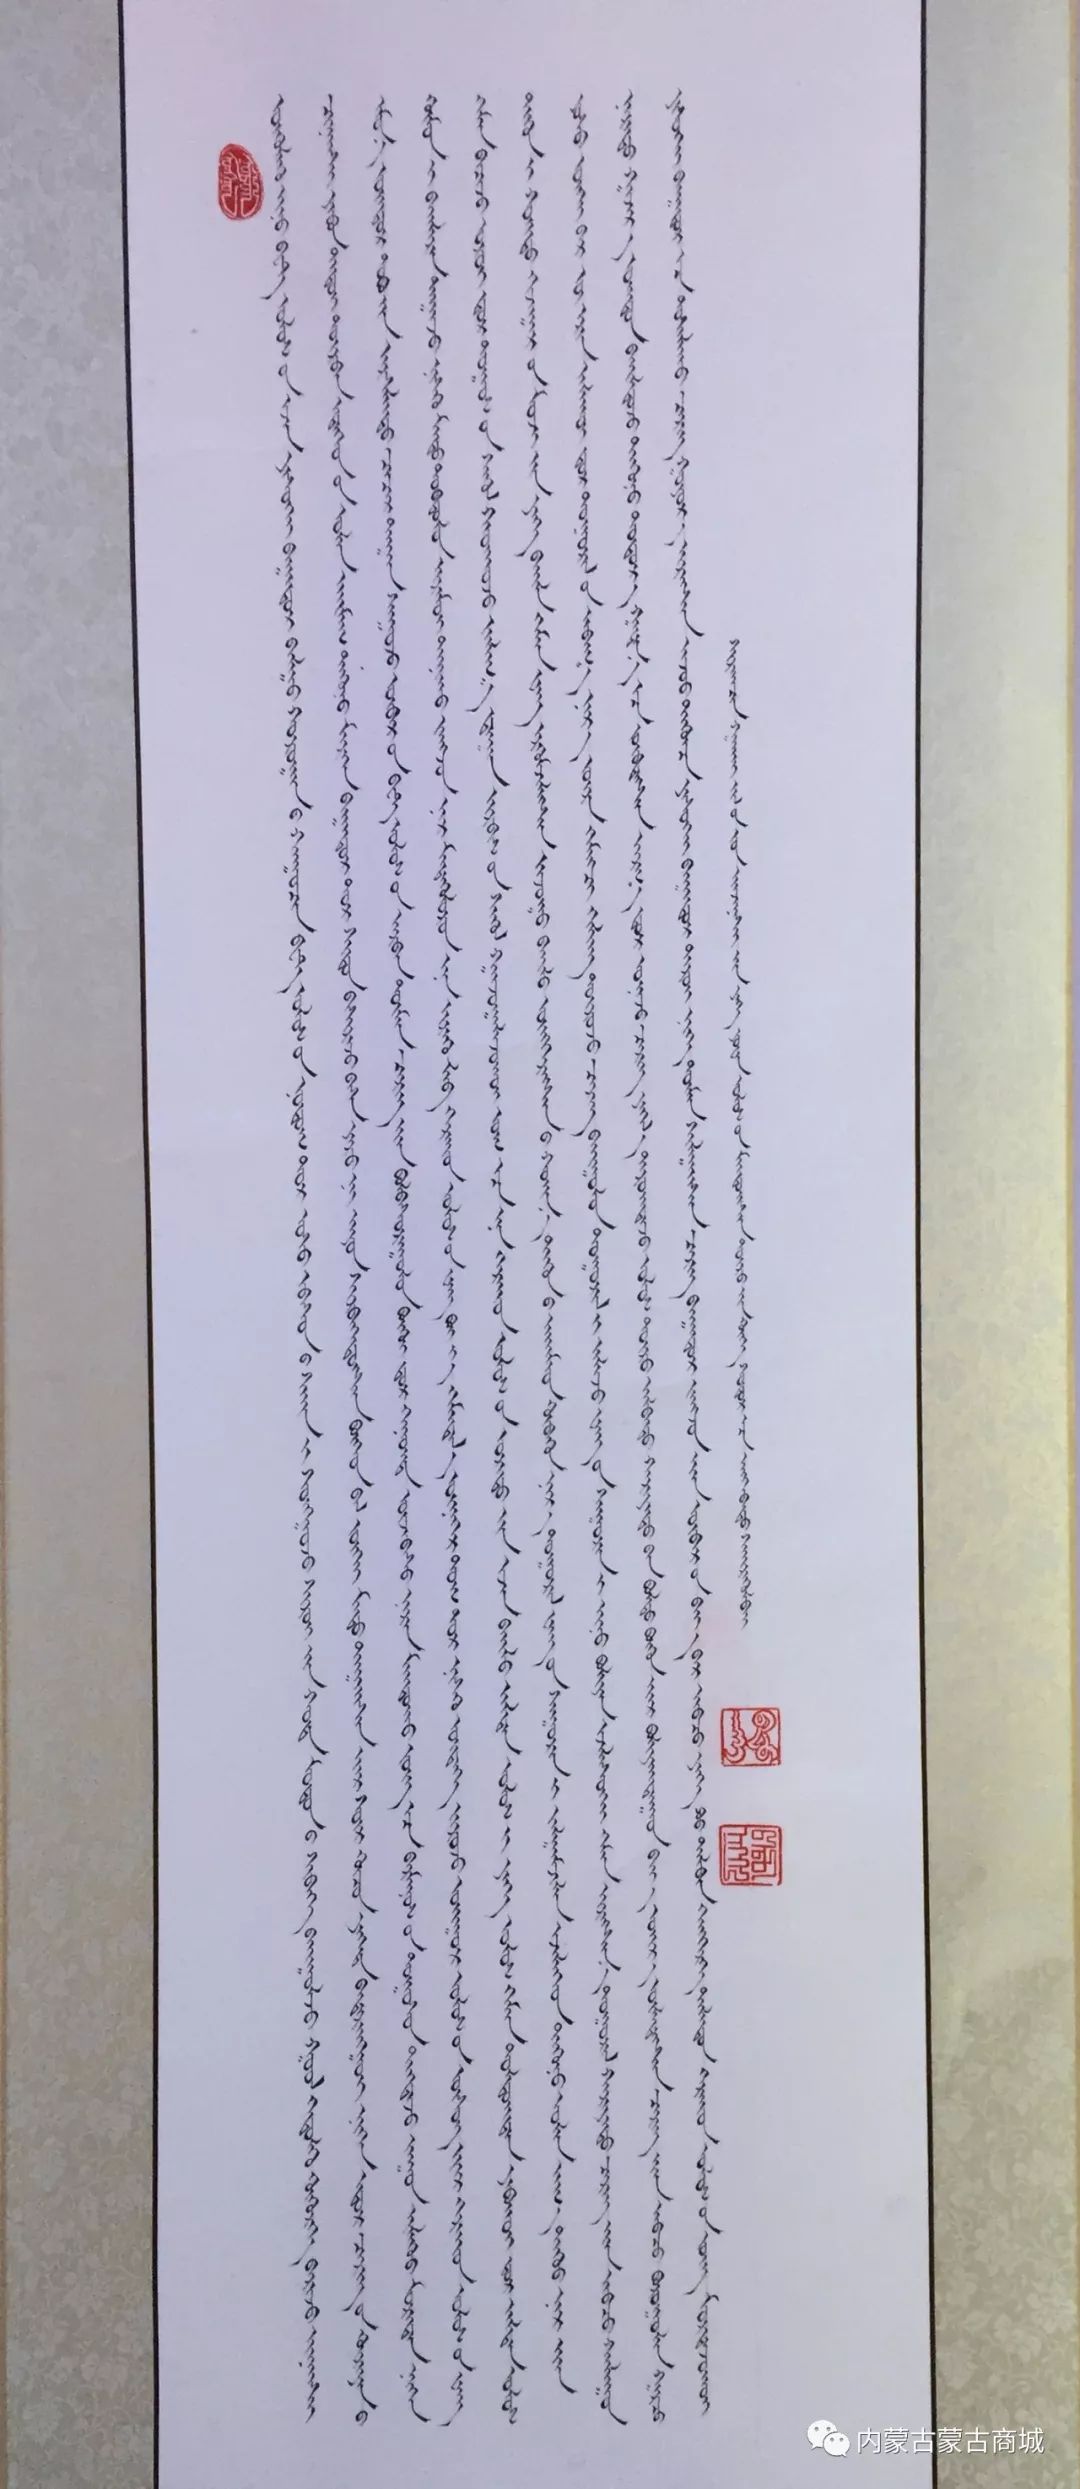 【第二期】蒙古文书法作品 第11张